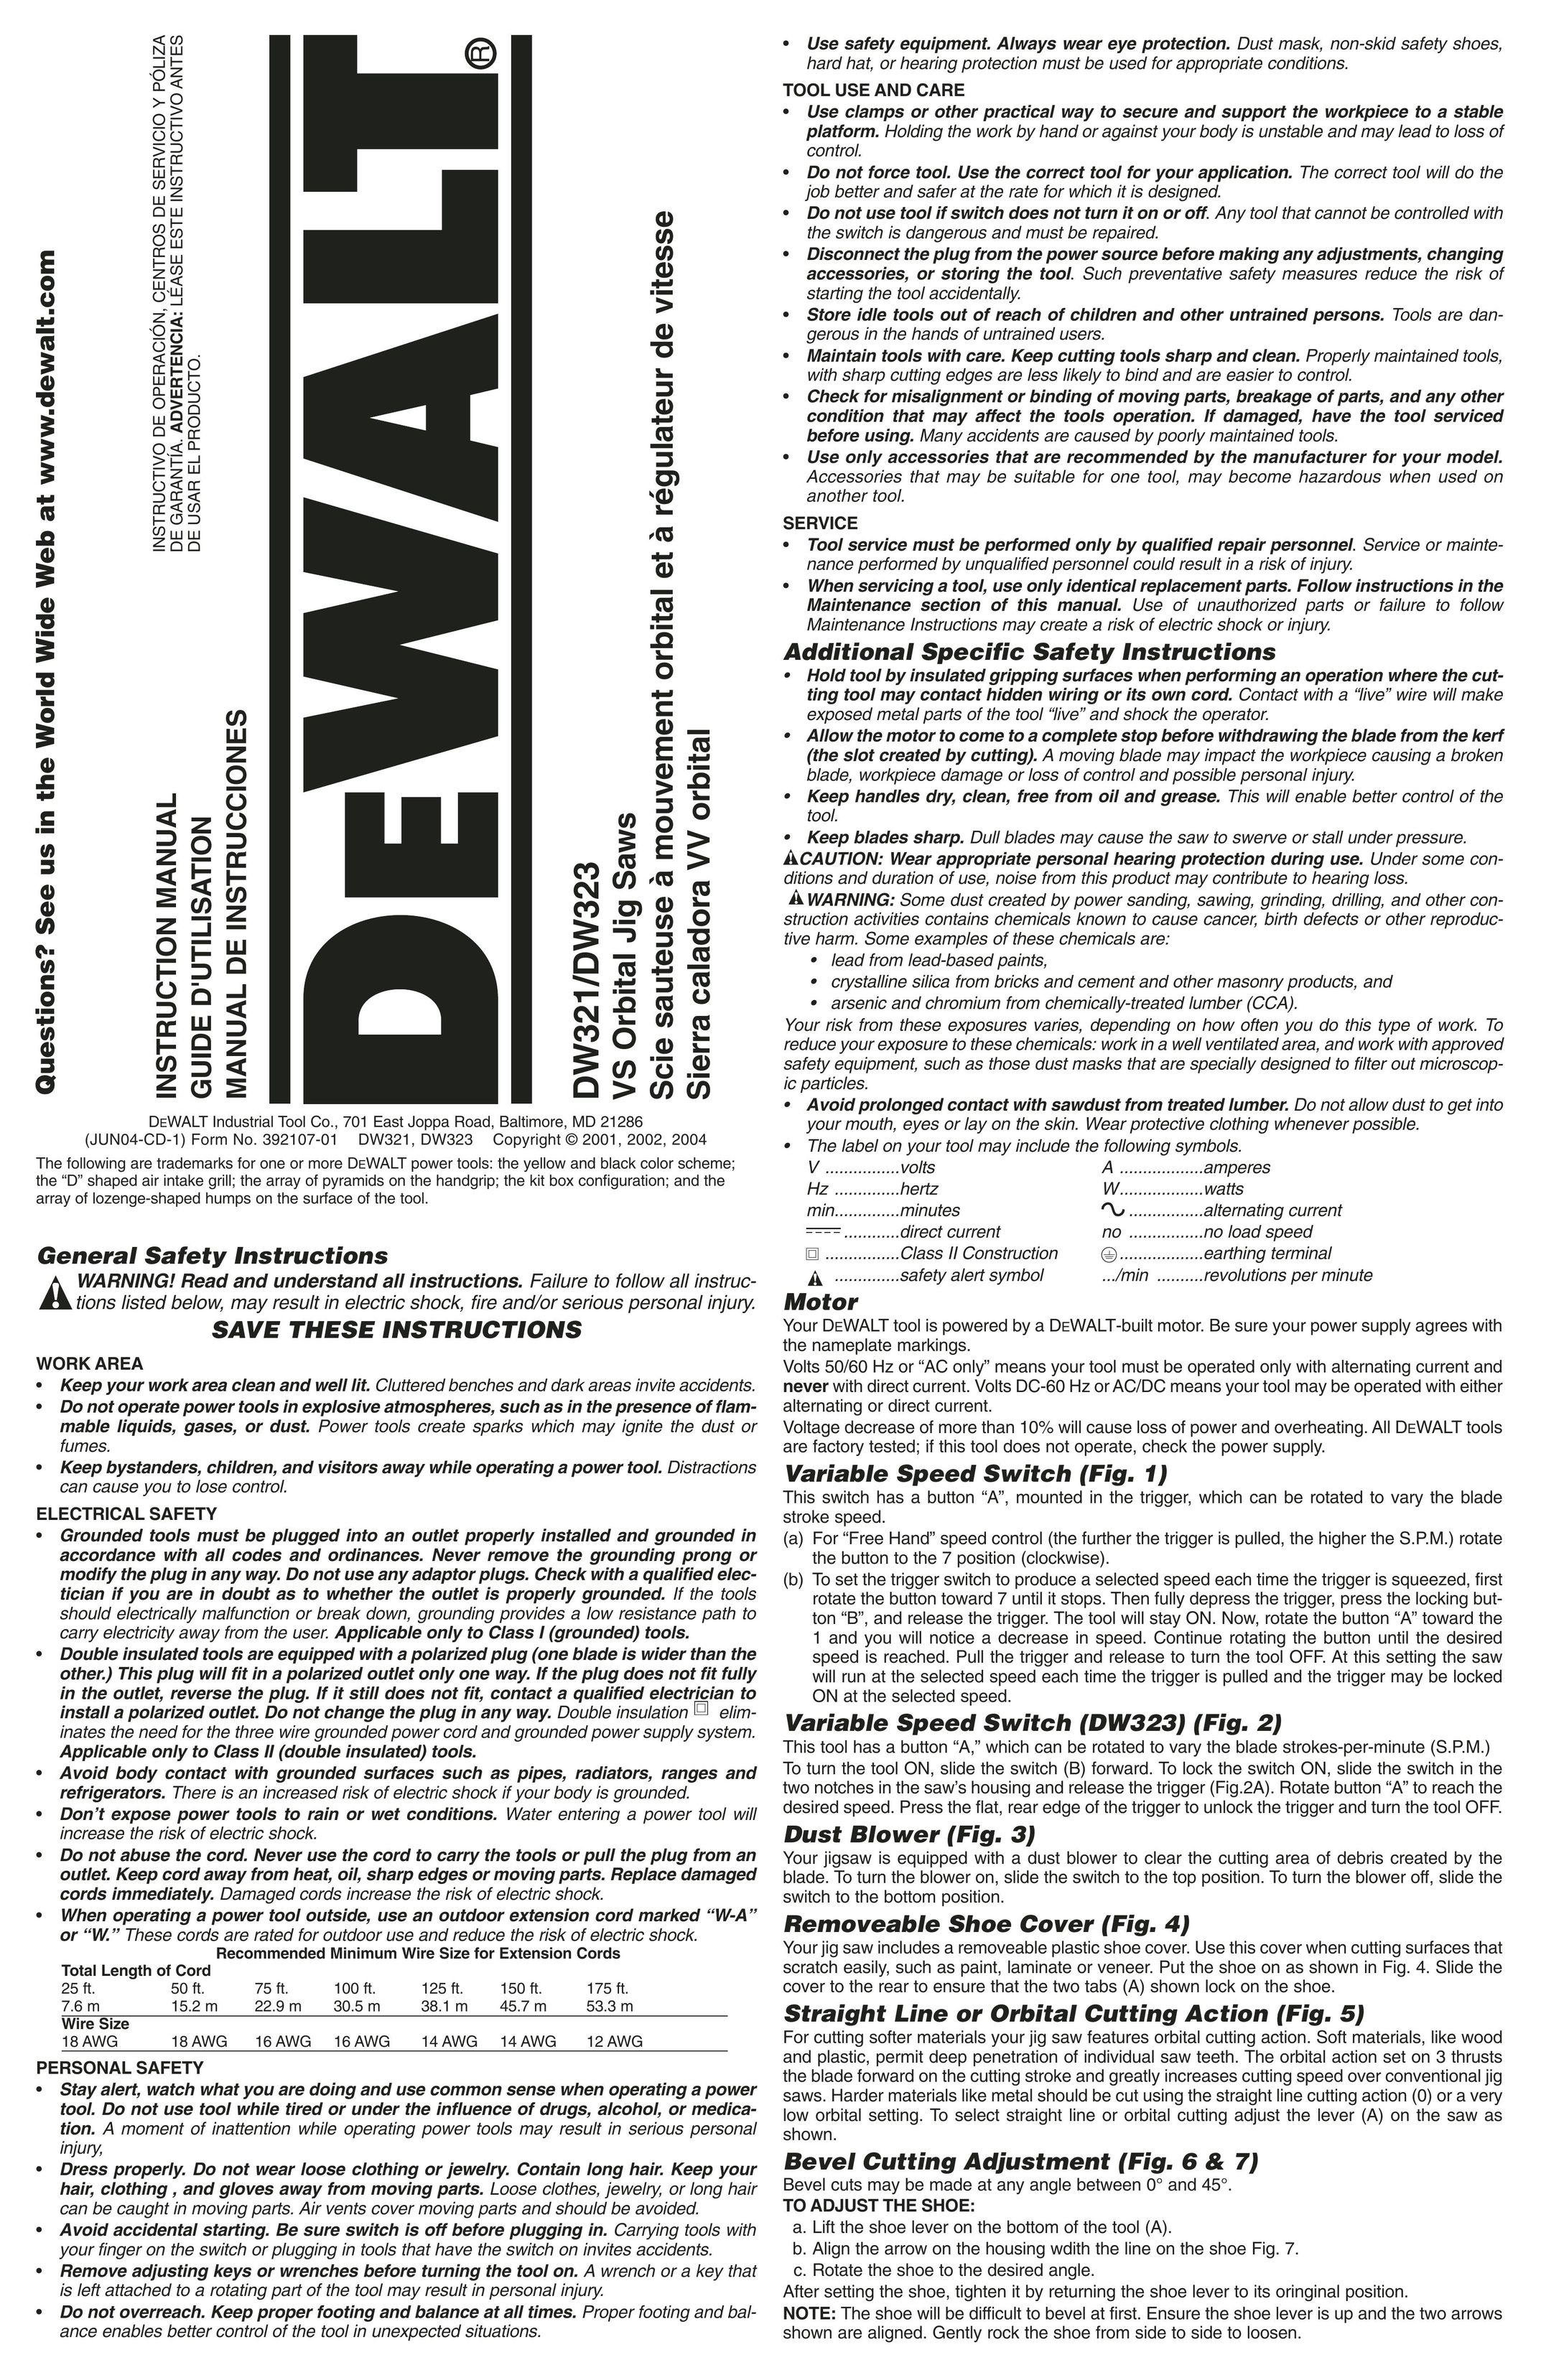 DeWalt DW323 Saw User Manual